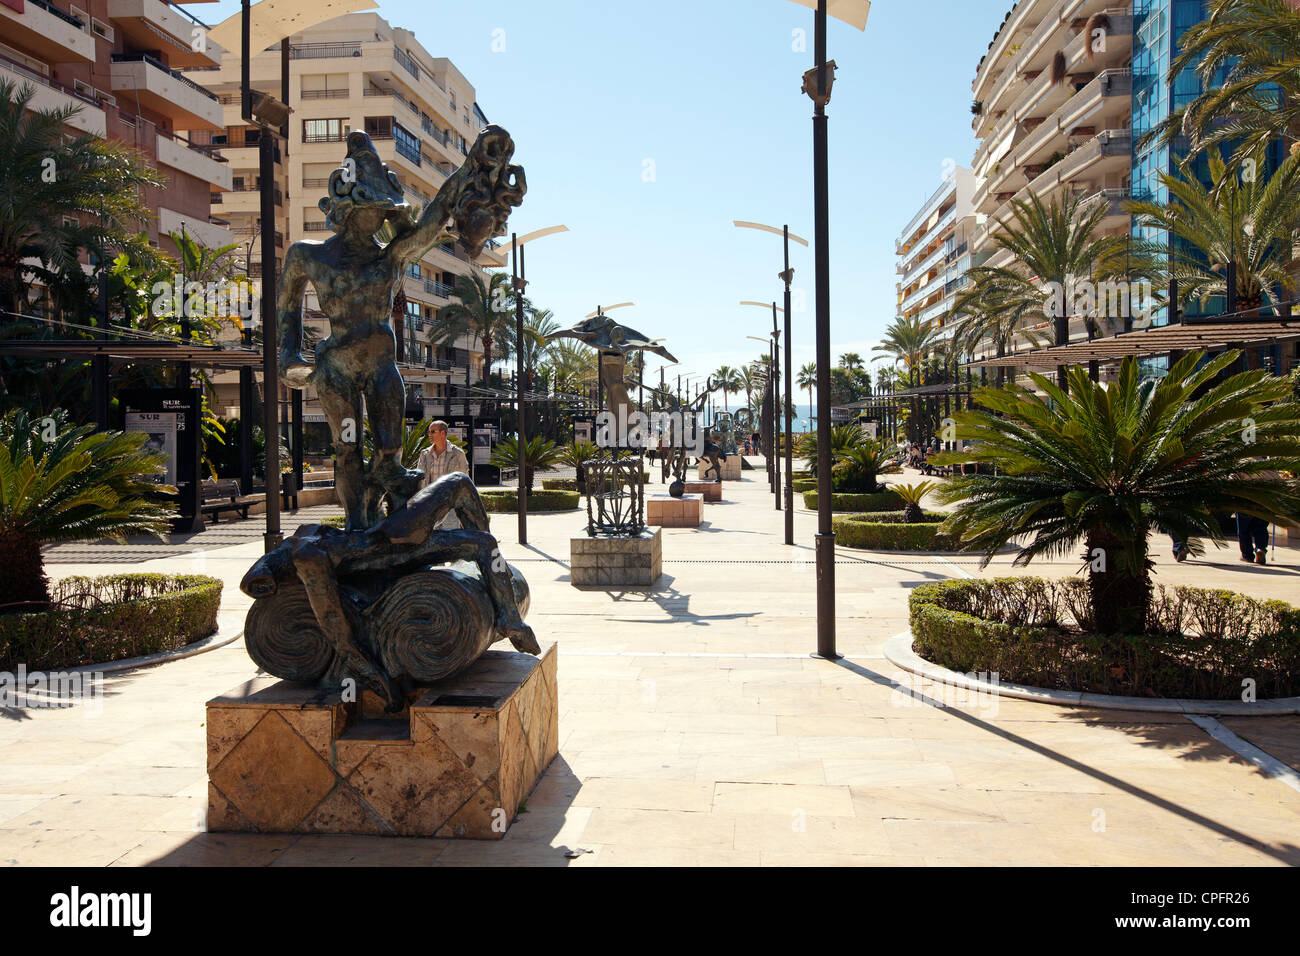 Sculpture on Avenida del Mar Marbella Malaga Costa del Sol Andalusia Spain Stock Photo